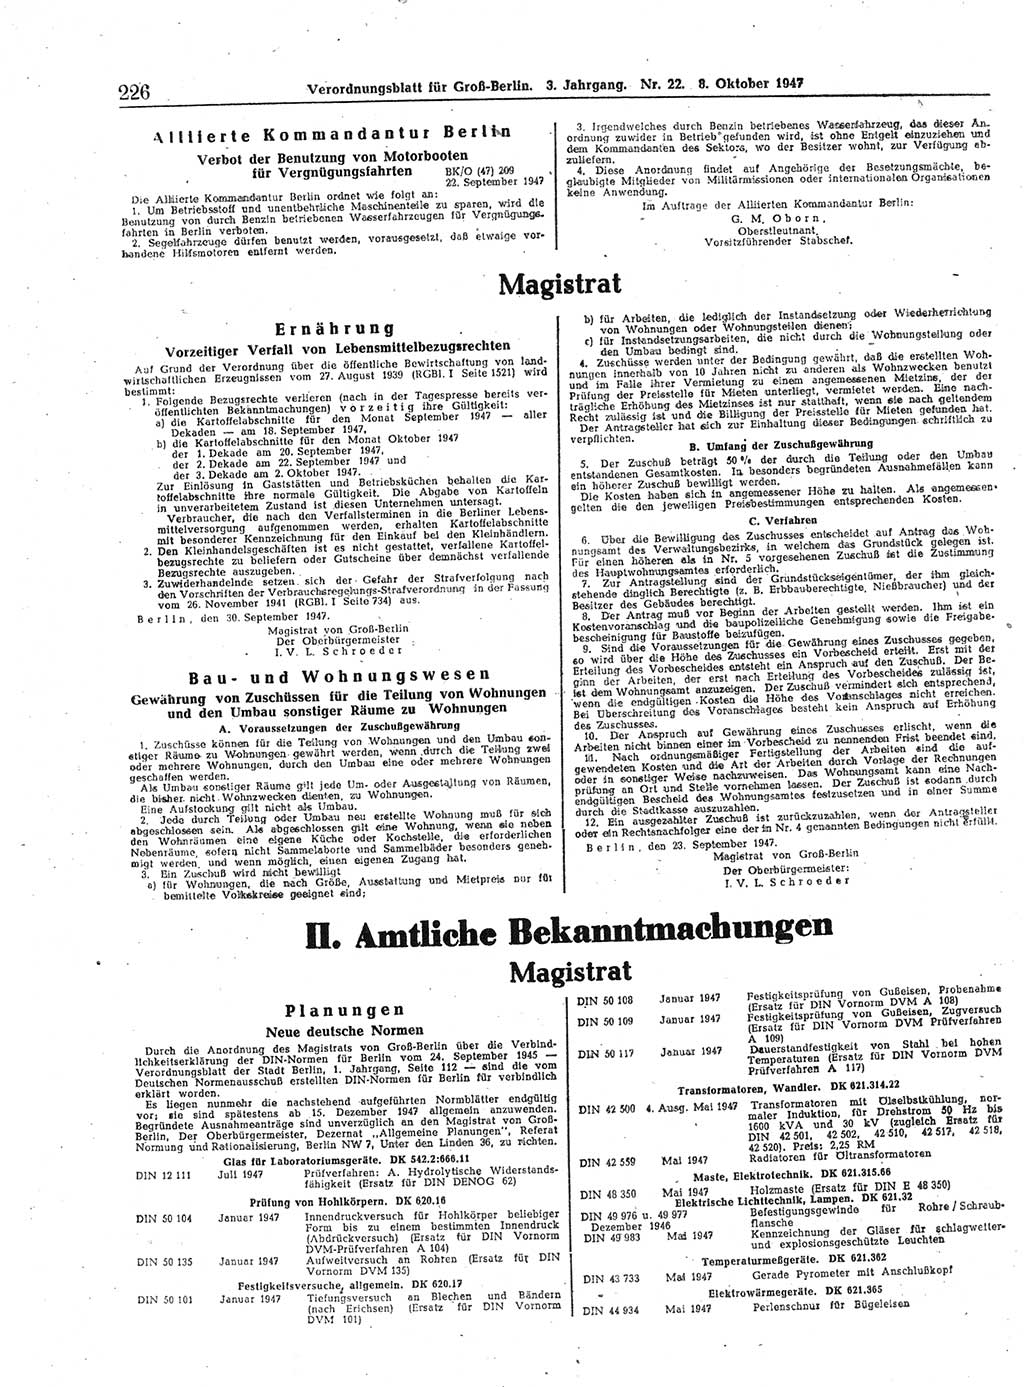 Verordnungsblatt (VOBl.) für Groß-Berlin 1947, Seite 226 (VOBl. Bln. 1947, S. 226)